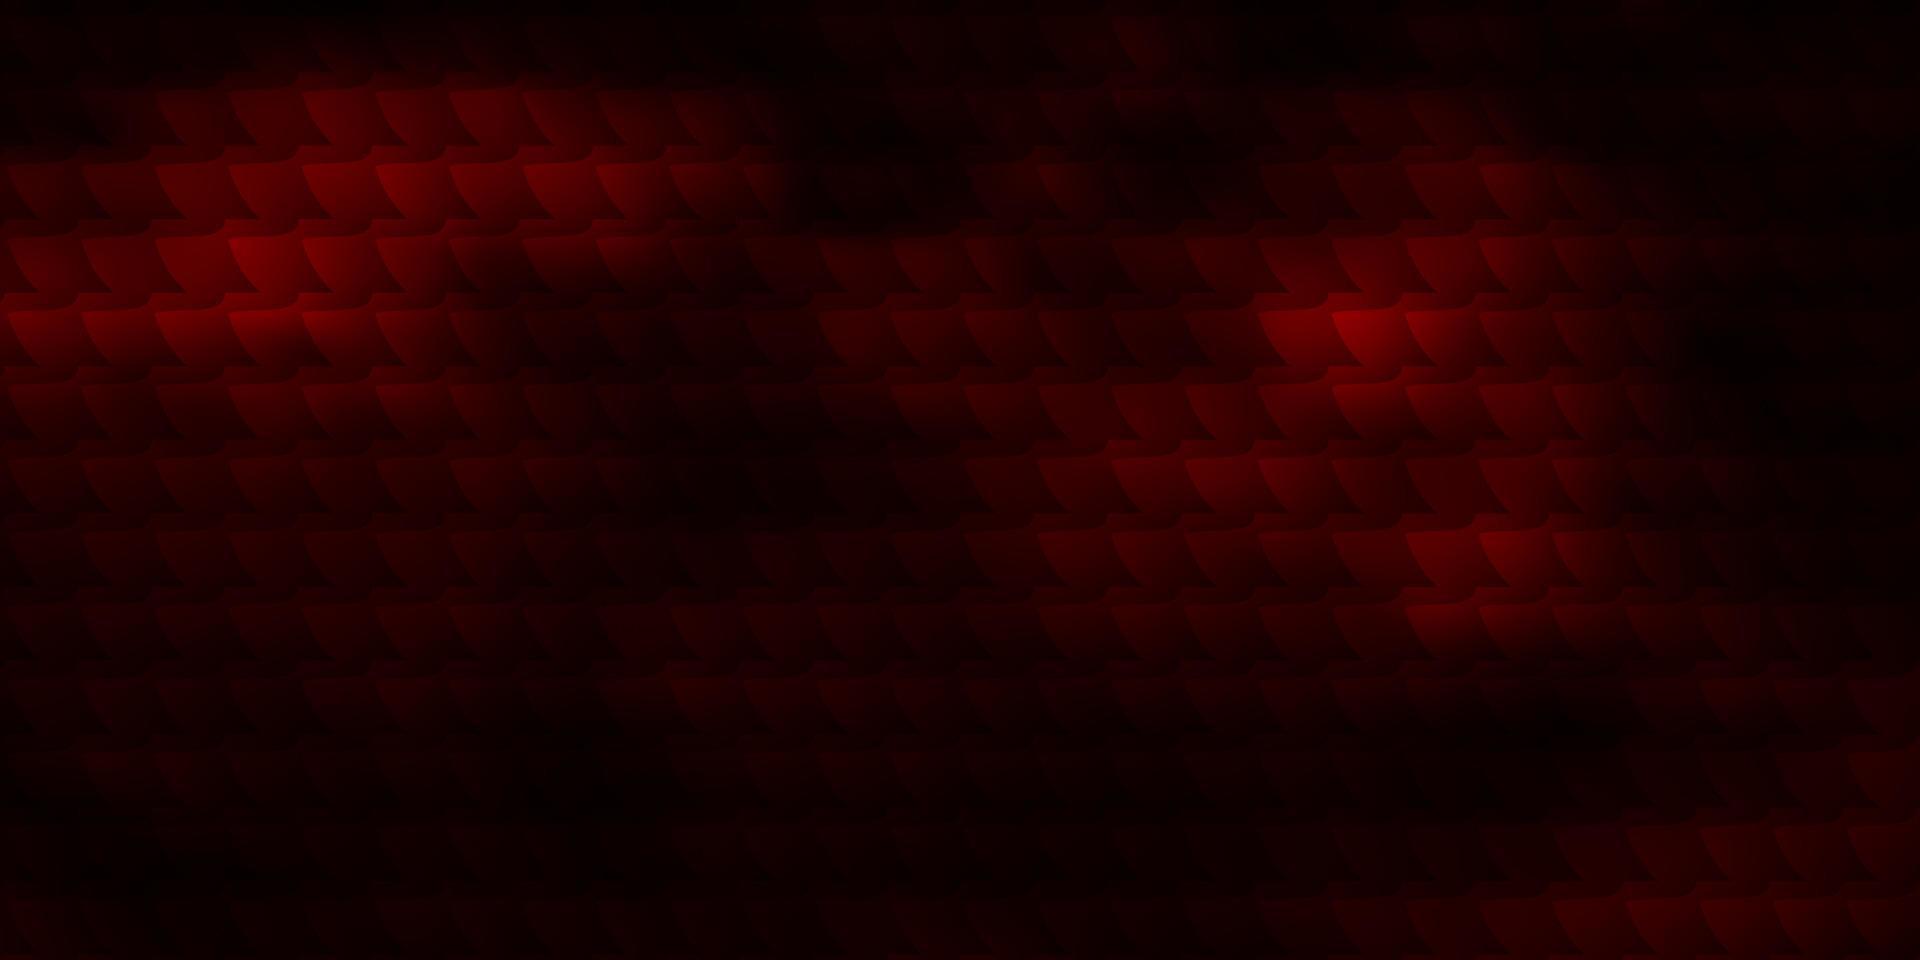 mörk röd vektor bakgrund i polygonal stil.